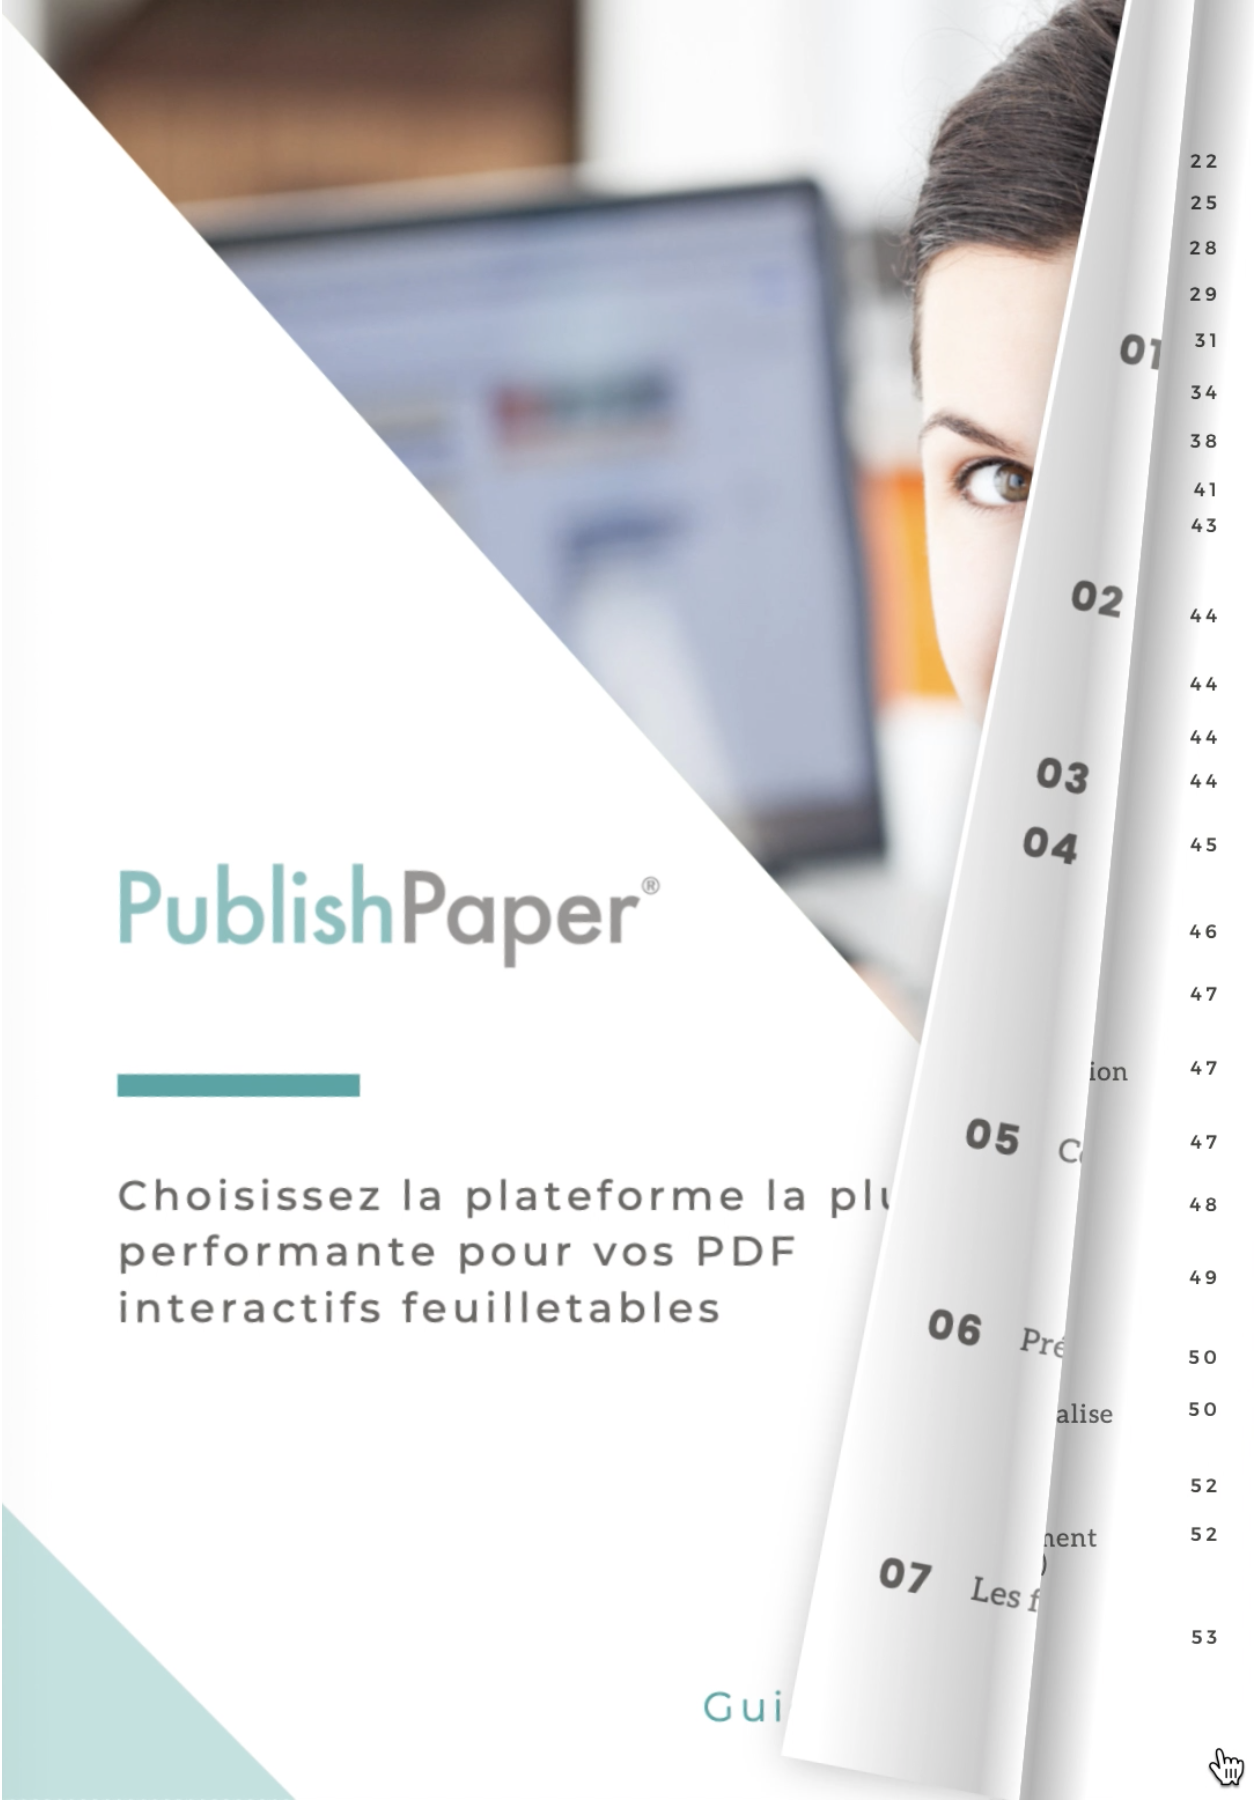 Supprimer une publication PublishPaper - catalogue interactif